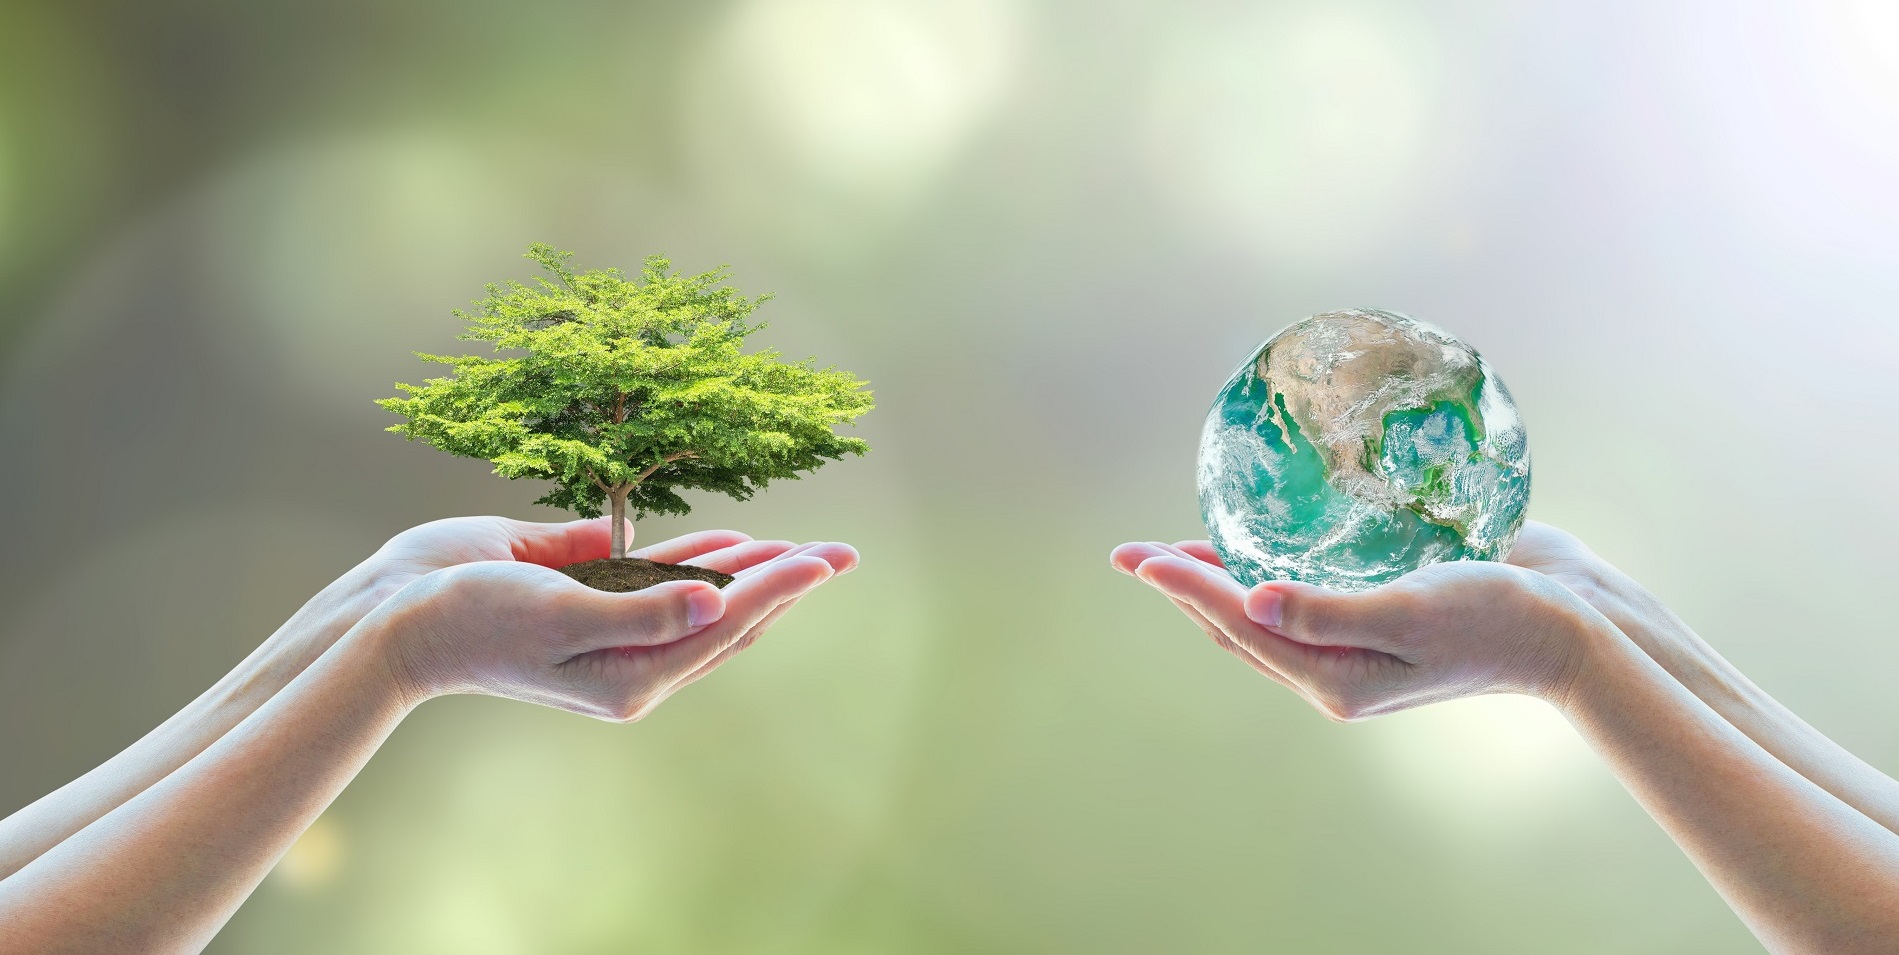 La educación ambiental como instrumento básico para proteger nuestro entorno